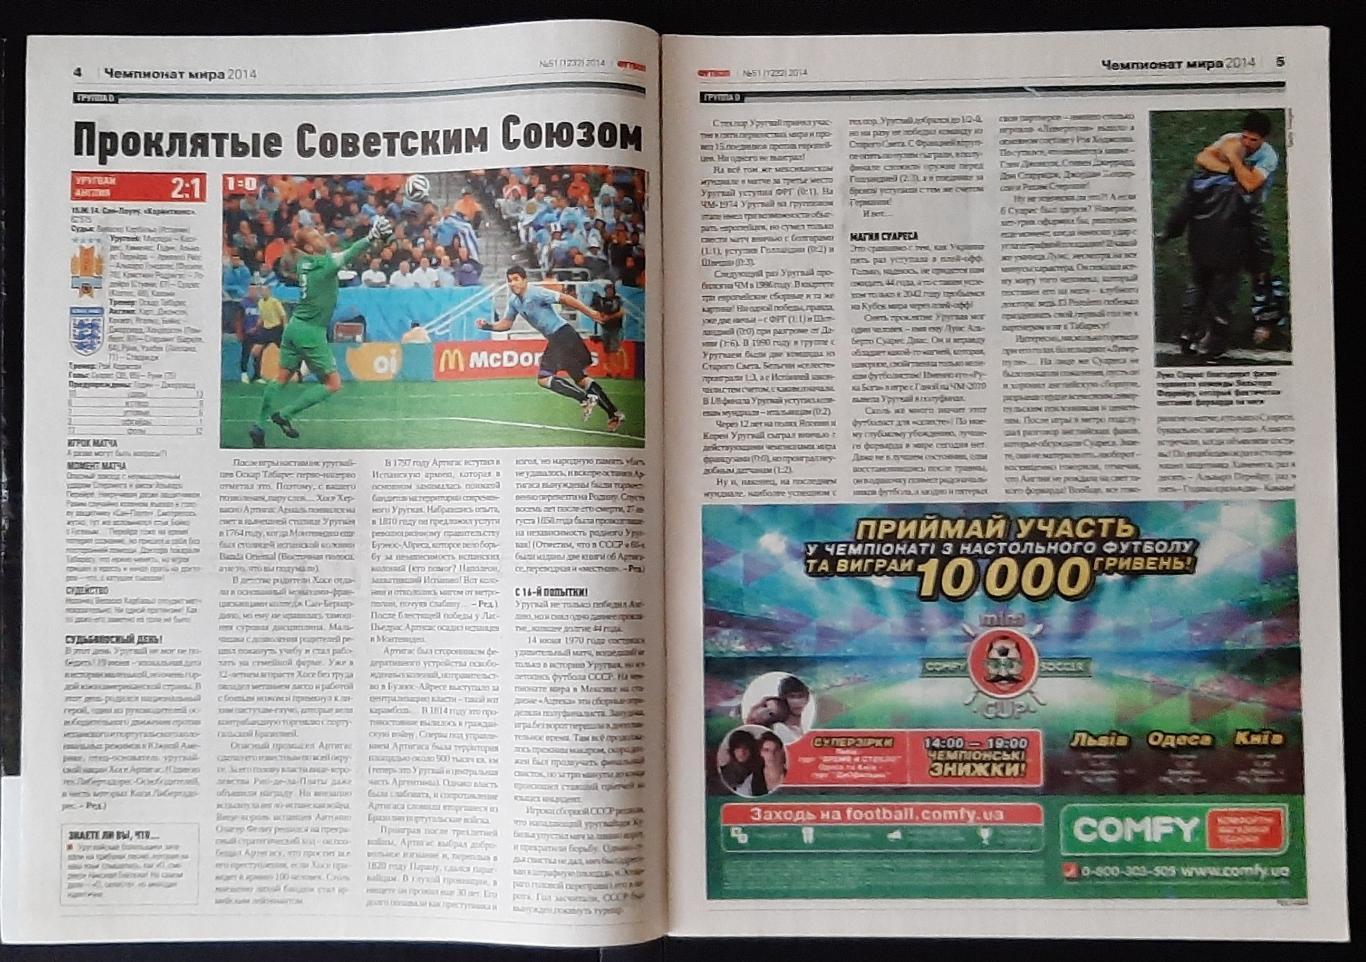 Журнал Футбол # 51 2014 матчі Чемпіонату світу. 1